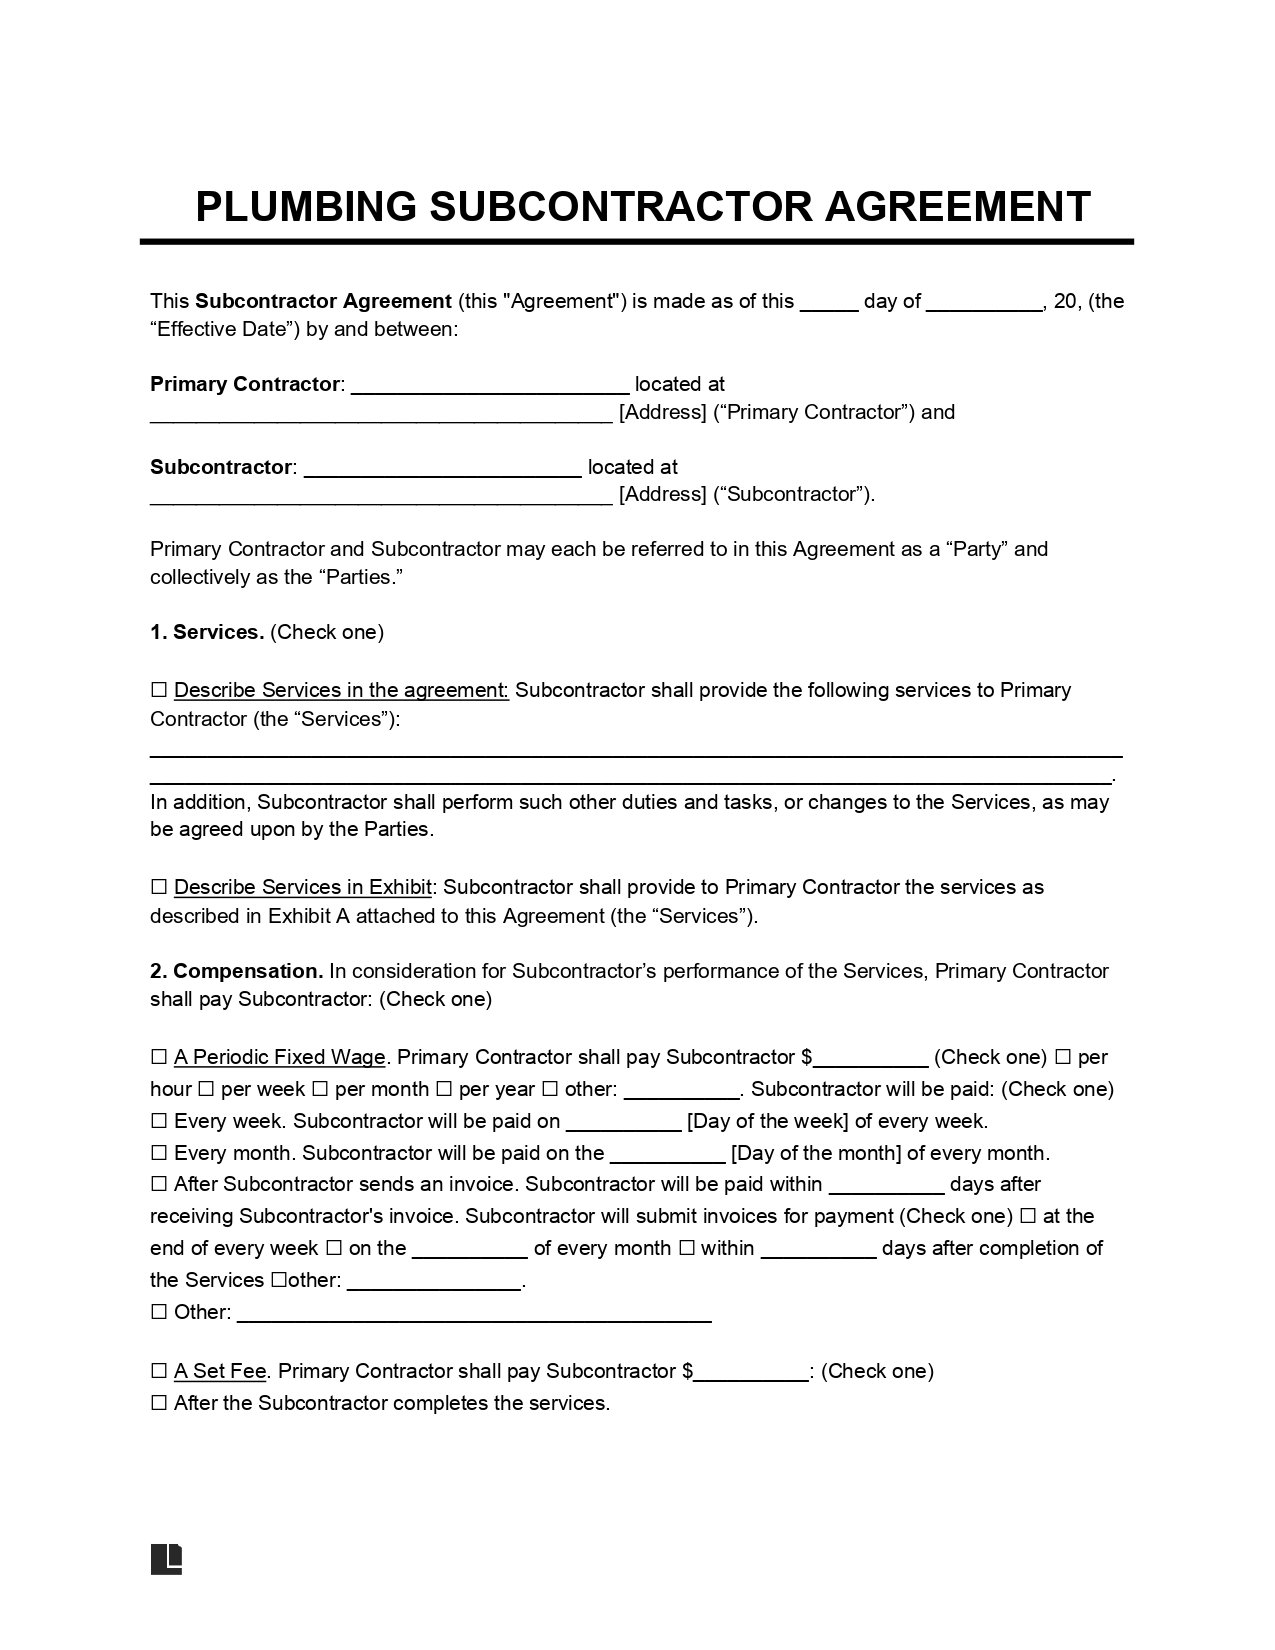 Plumbing Subcontractor Agreement